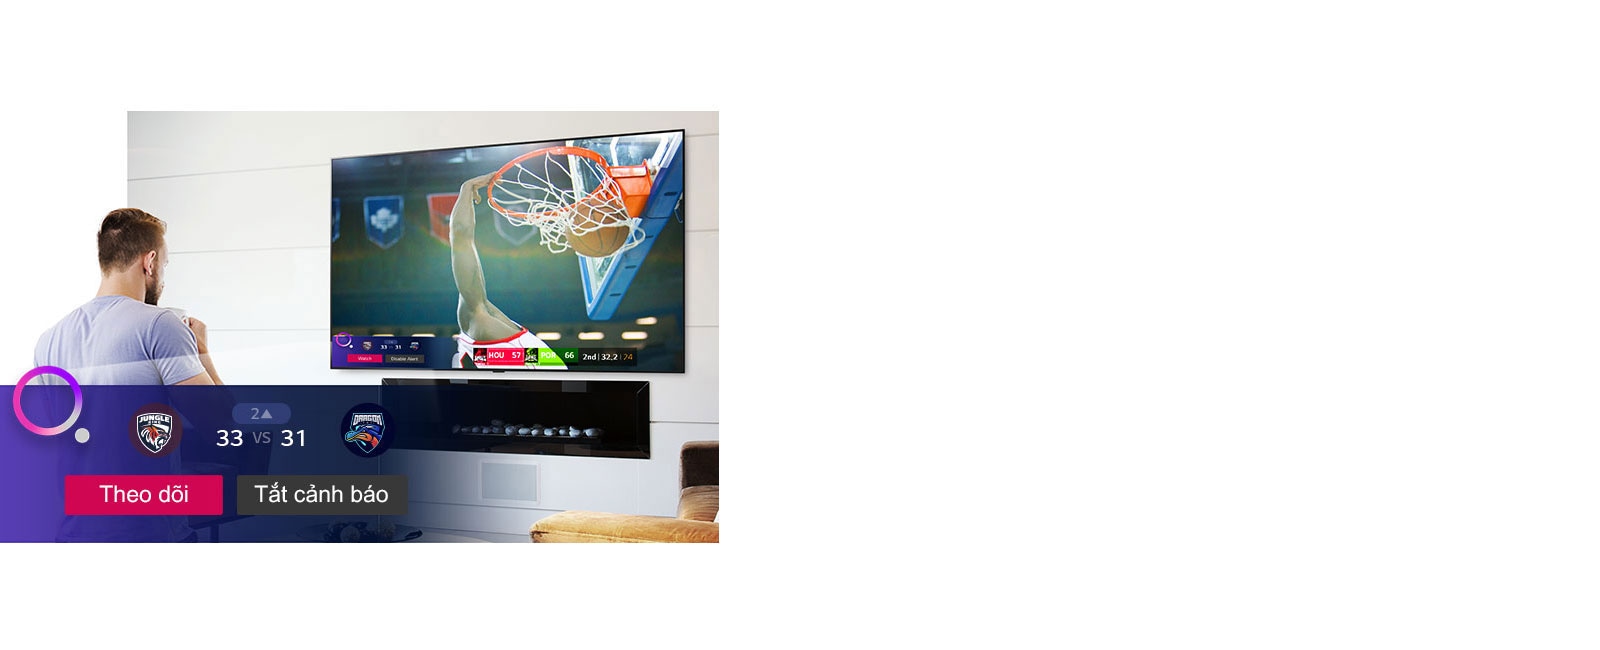 Màn hình TV hiển thị cảnh từ một trận bóng rổ với Thông báo thể thao